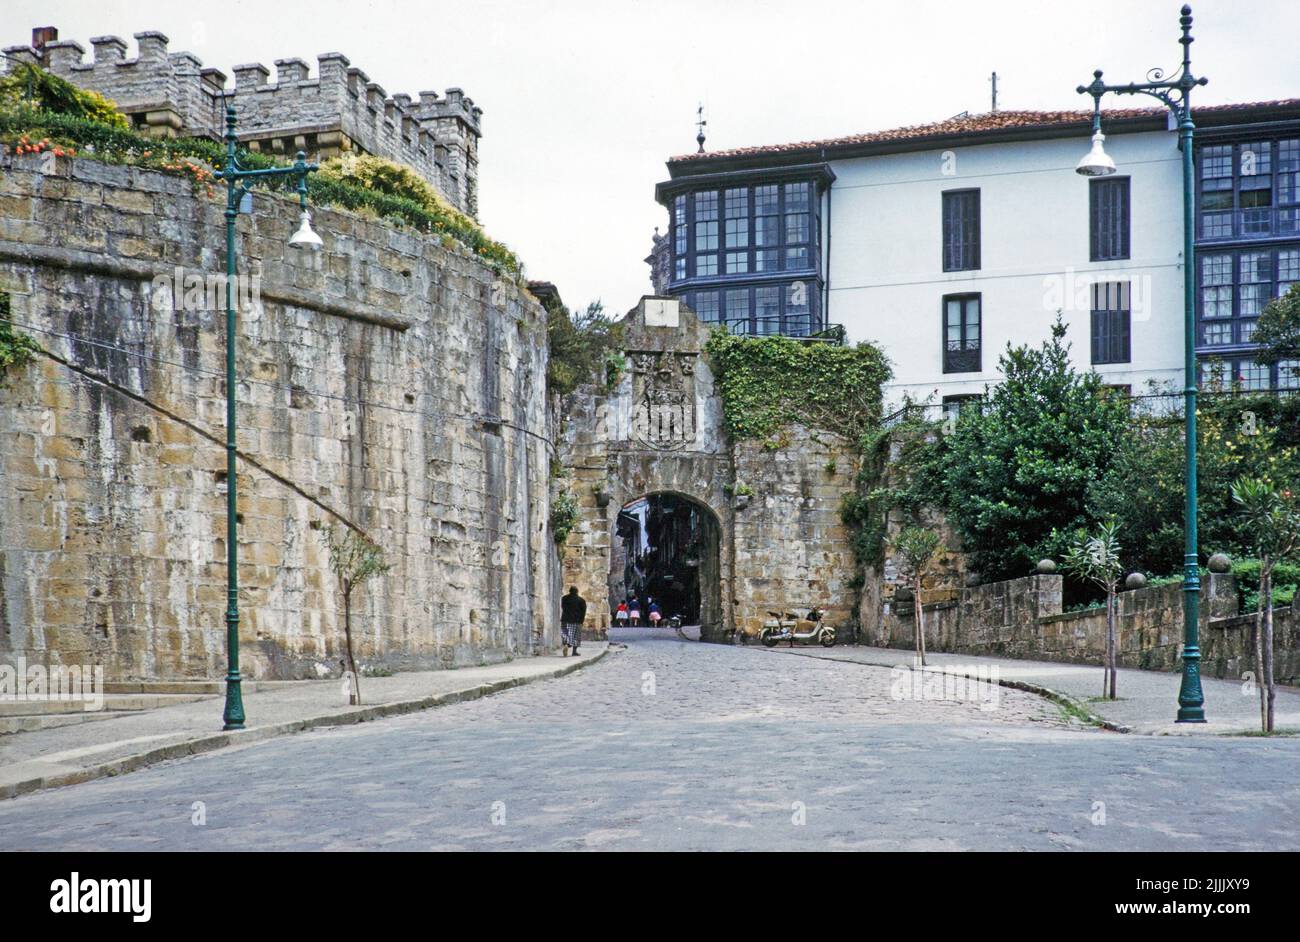 Arche d'entrée et bâtiments historiques dans la vieille ville de Hondarribia ou Fuenterrabía, pays basque, nord de l'Espagne, 1959 Banque D'Images